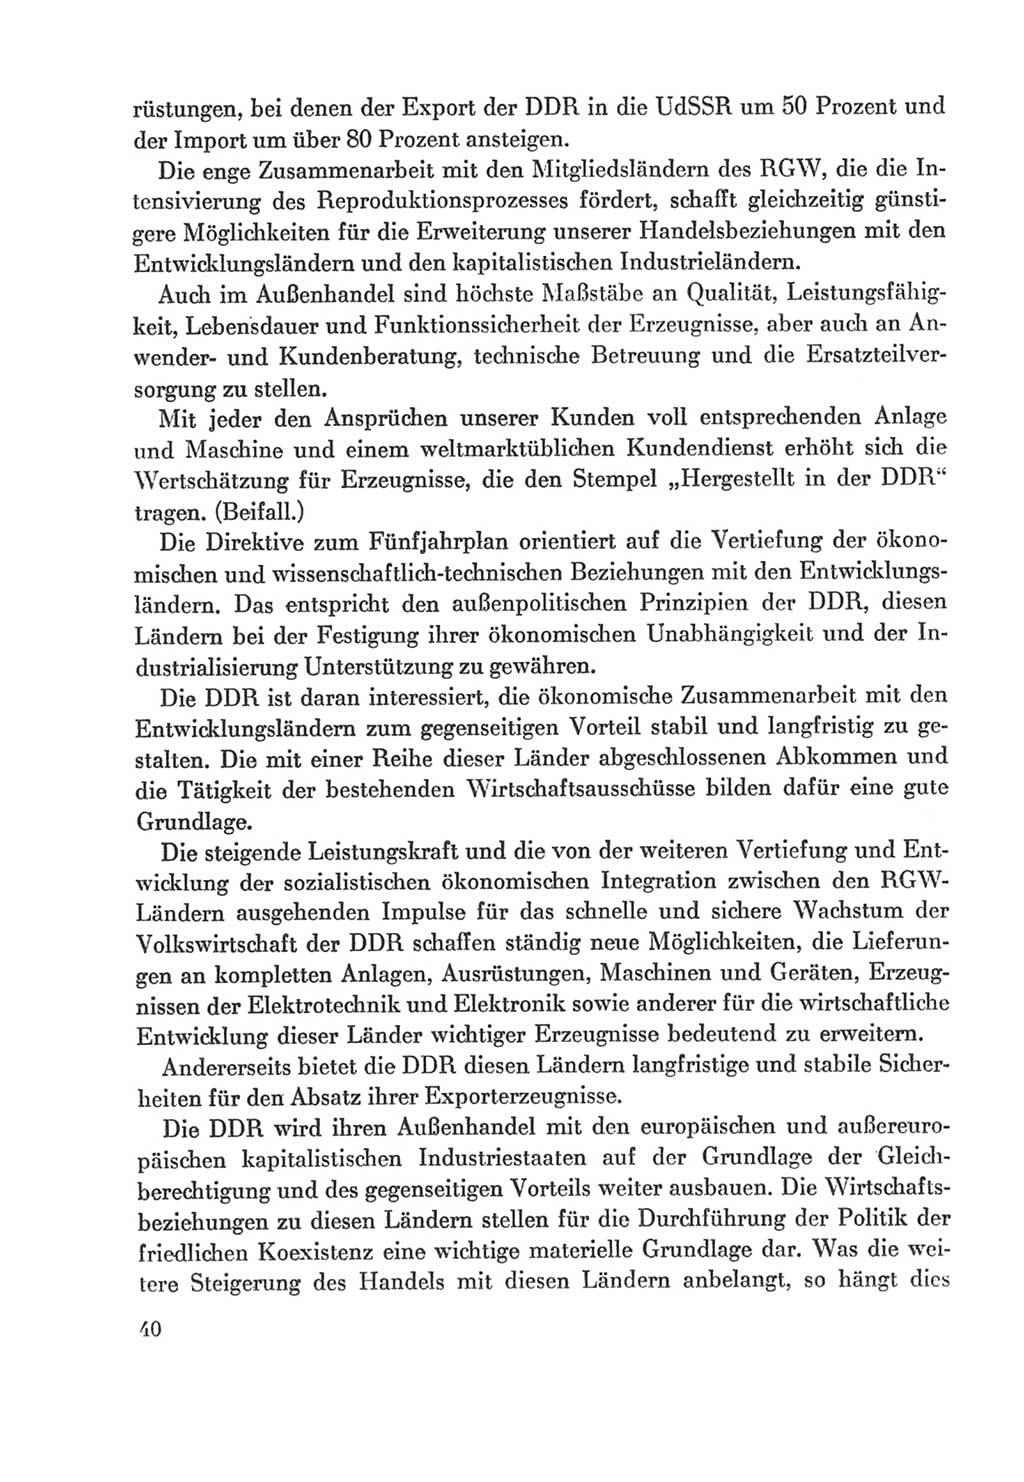 Protokoll der Verhandlungen des Ⅸ. Parteitages der Sozialistischen Einheitspartei Deutschlands (SED) [Deutsche Demokratische Republik (DDR)] 1976, Band 2, Seite 40 (Prot. Verh. Ⅸ. PT SED DDR 1976, Bd. 2, S. 40)